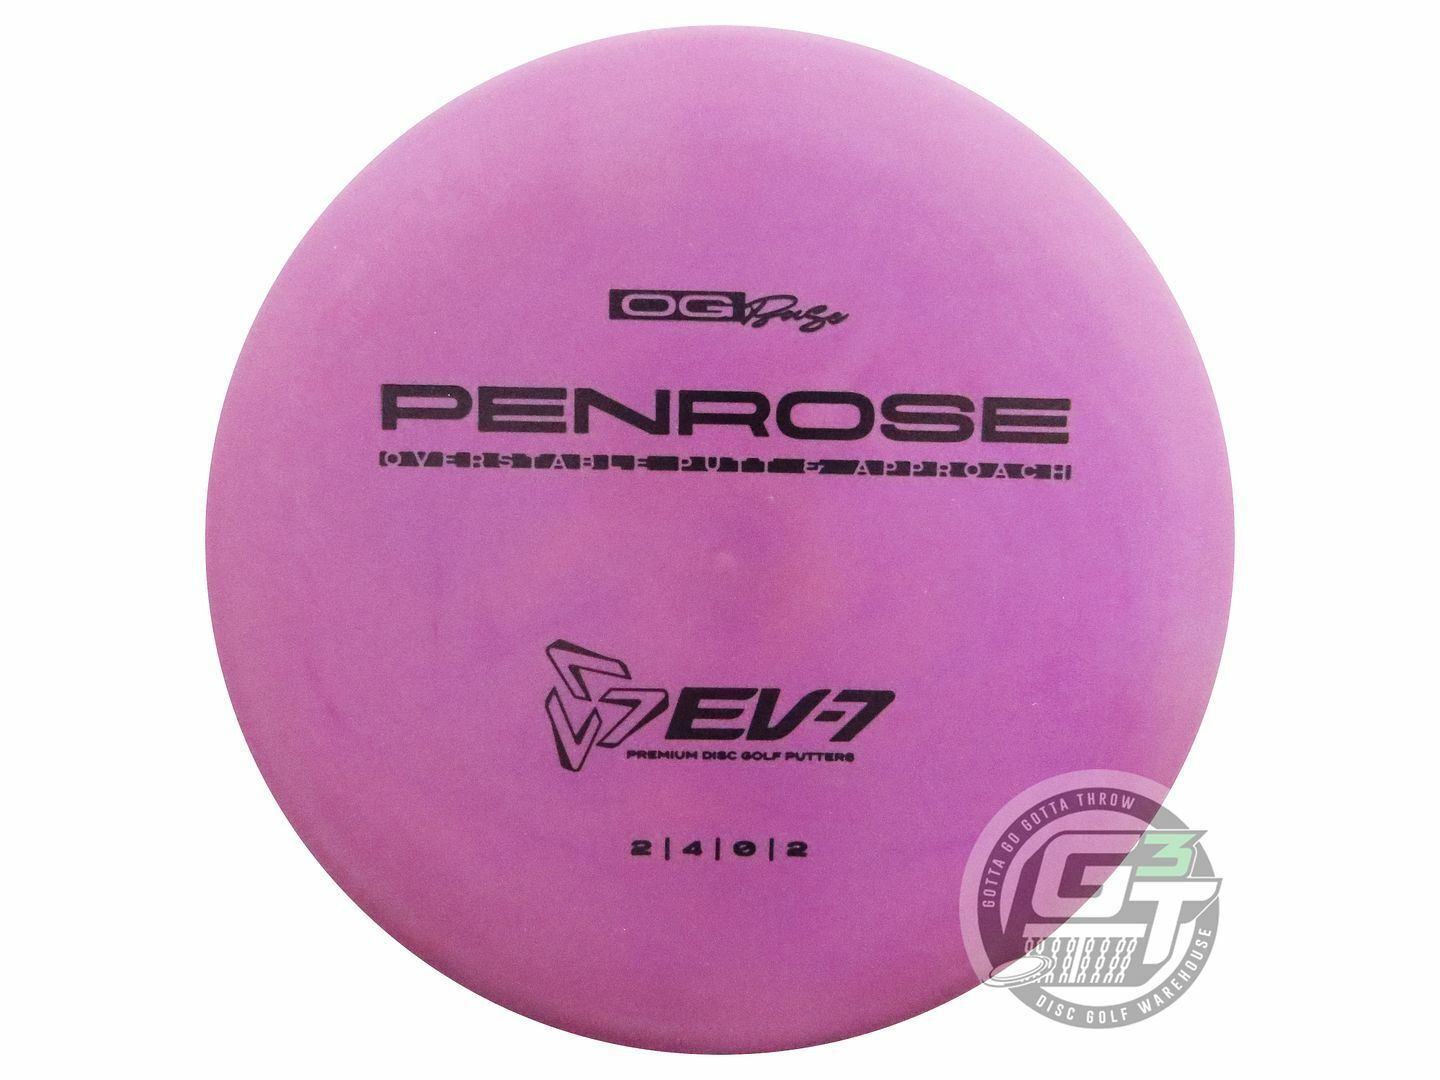 EV-7 OG Base Penrose Putter Golf Disc (Individually Listed)